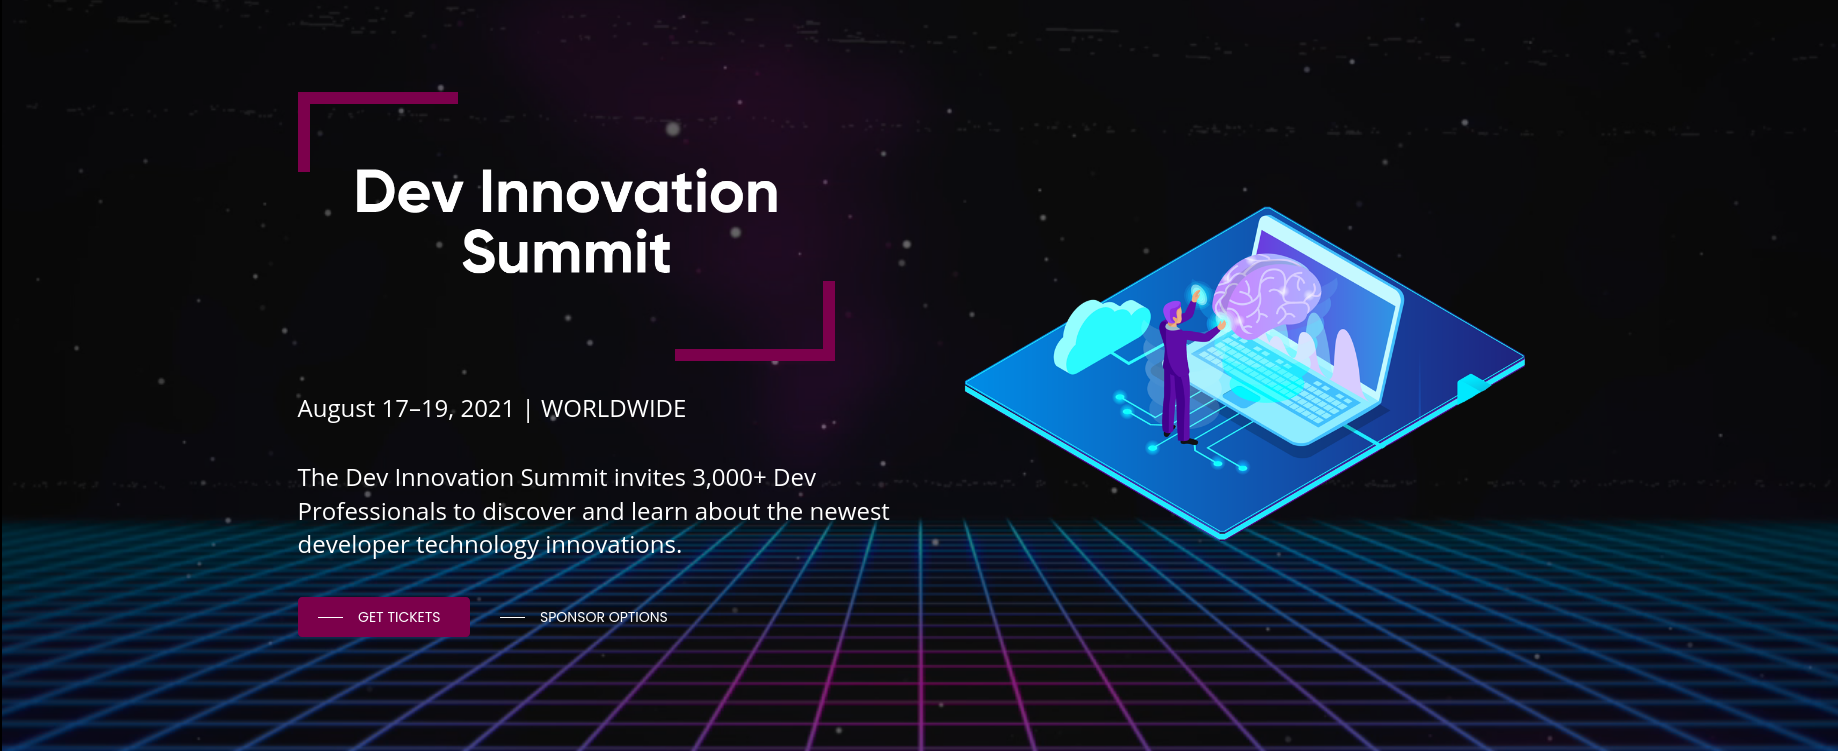 Dev Innovation Summit 2021